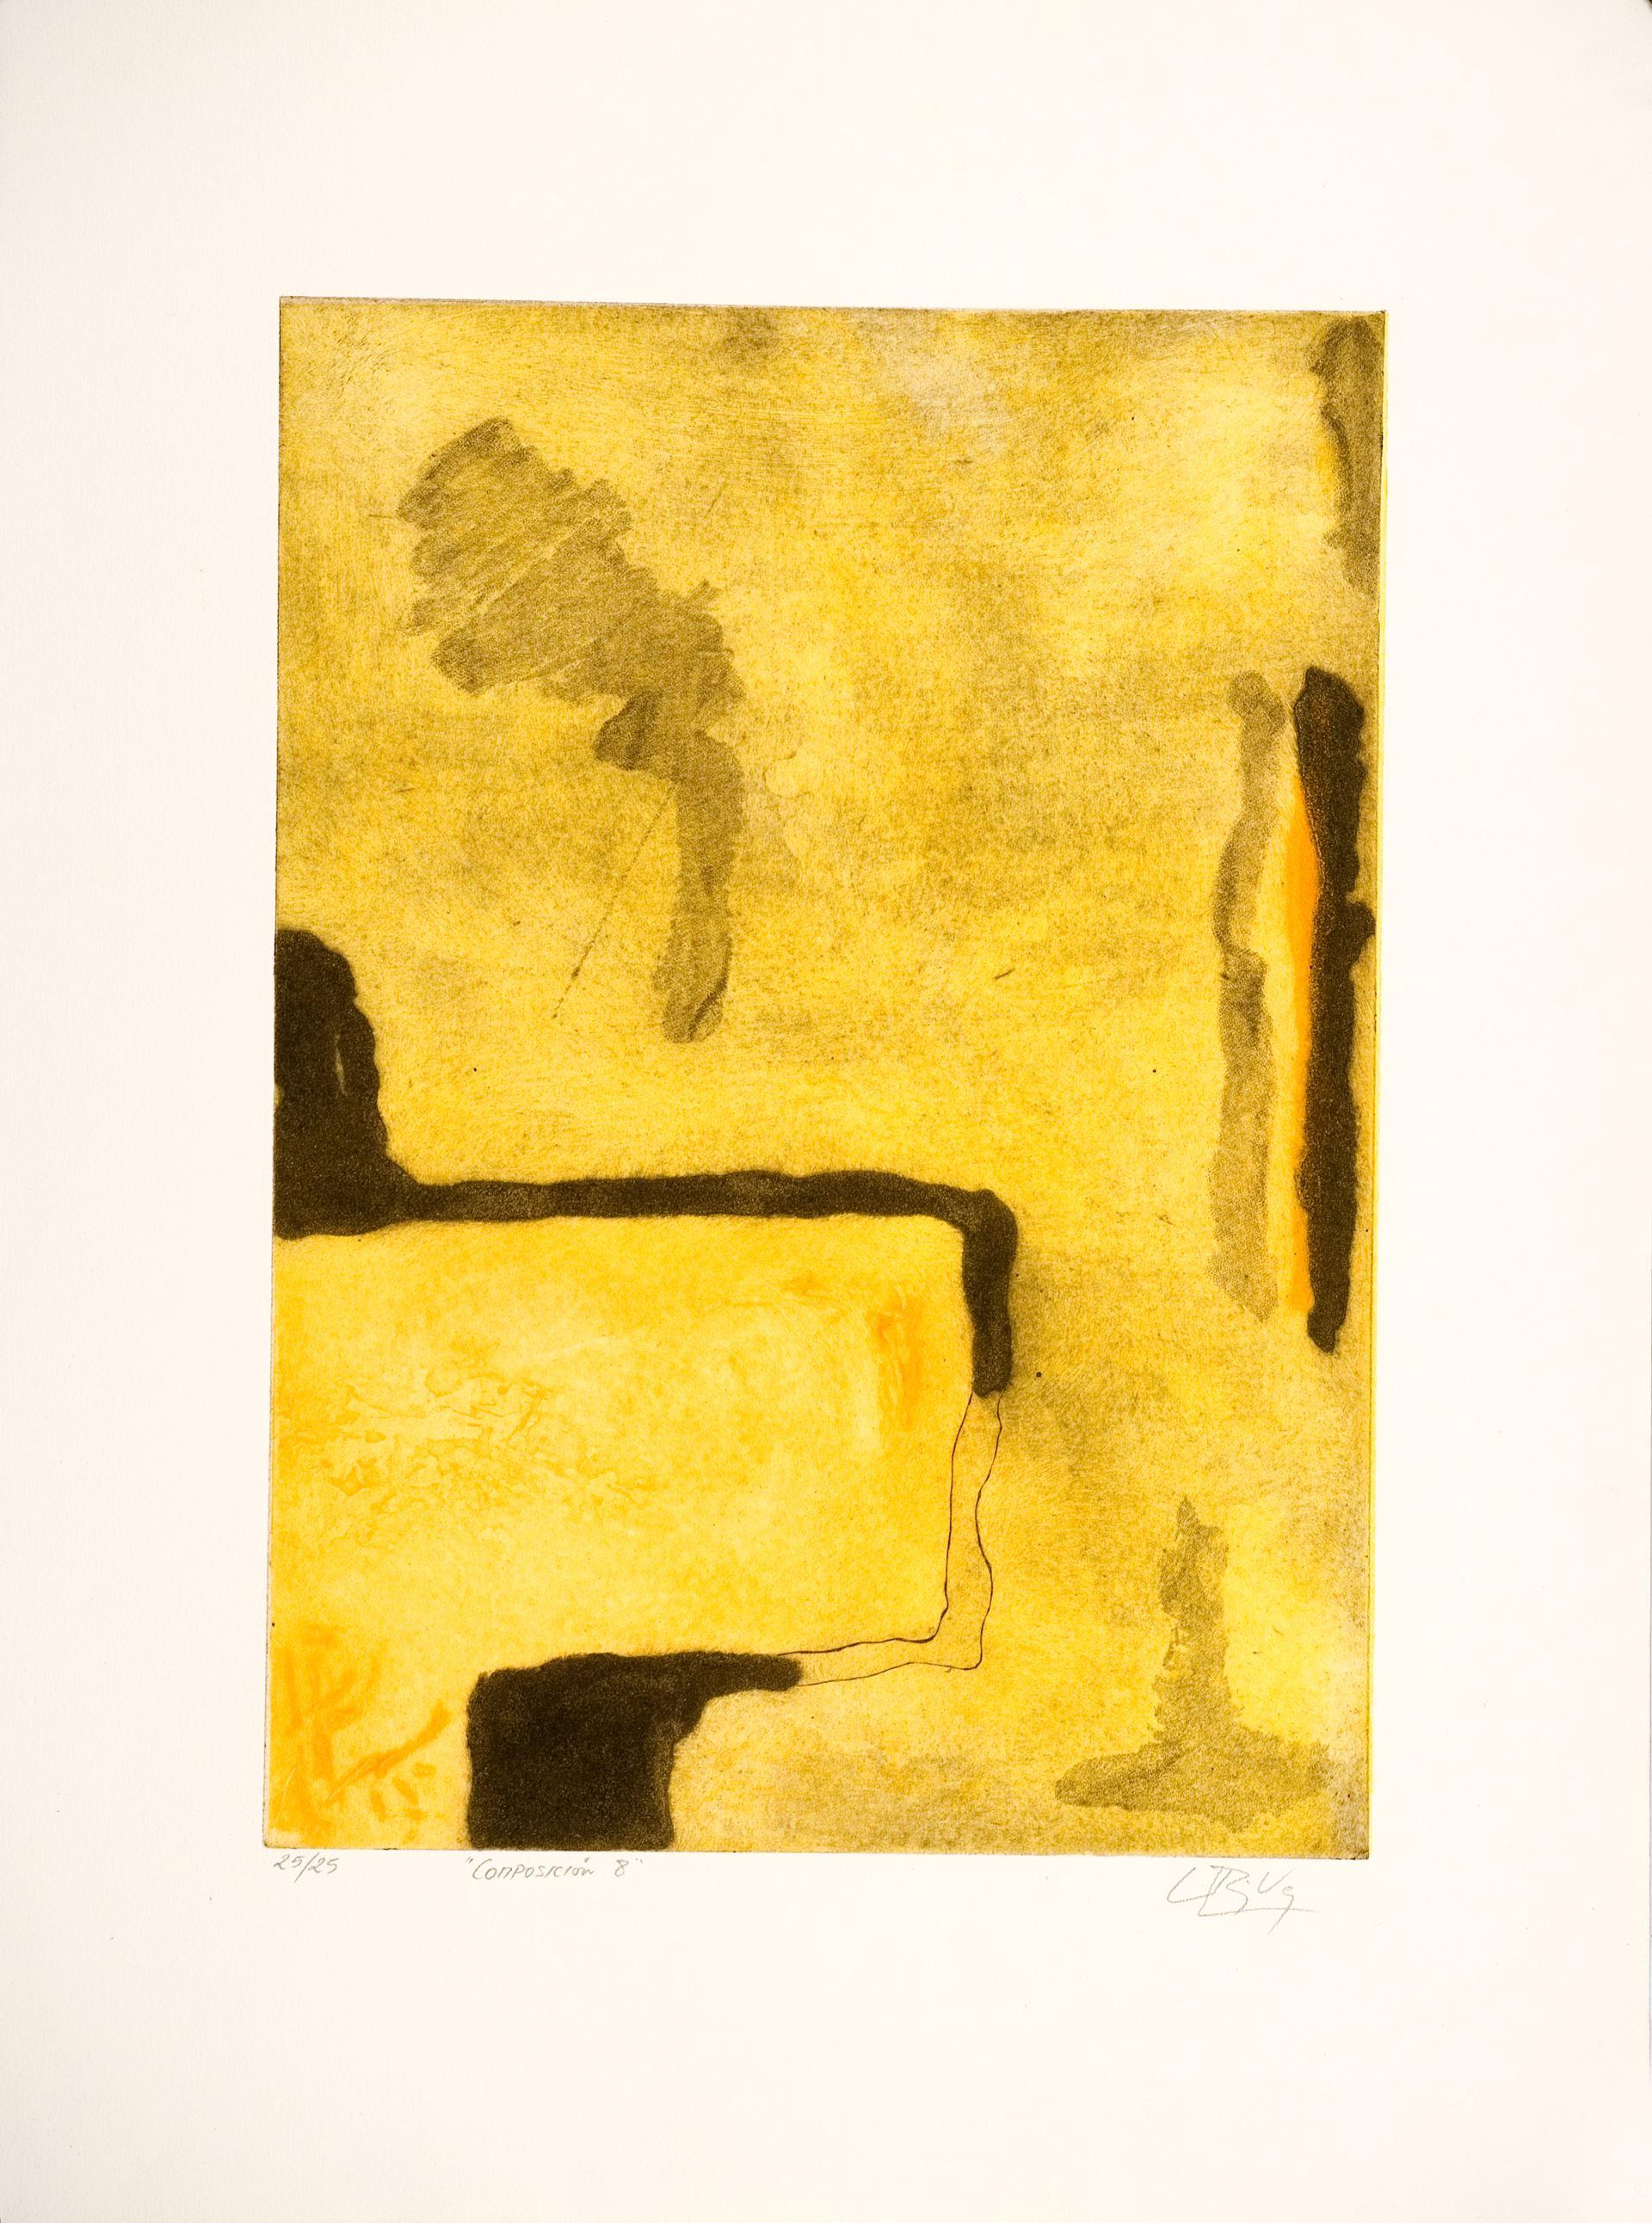 Luis Pérez Vega (Spanien, 1976)
Komposition VIII", 1995
Gravur auf Papier
20,5 x 14,6 Zoll (52 x 37 cm)
Auflage von 25 Stück
ID: PER1275-015-025
Vom Autor handsigniert